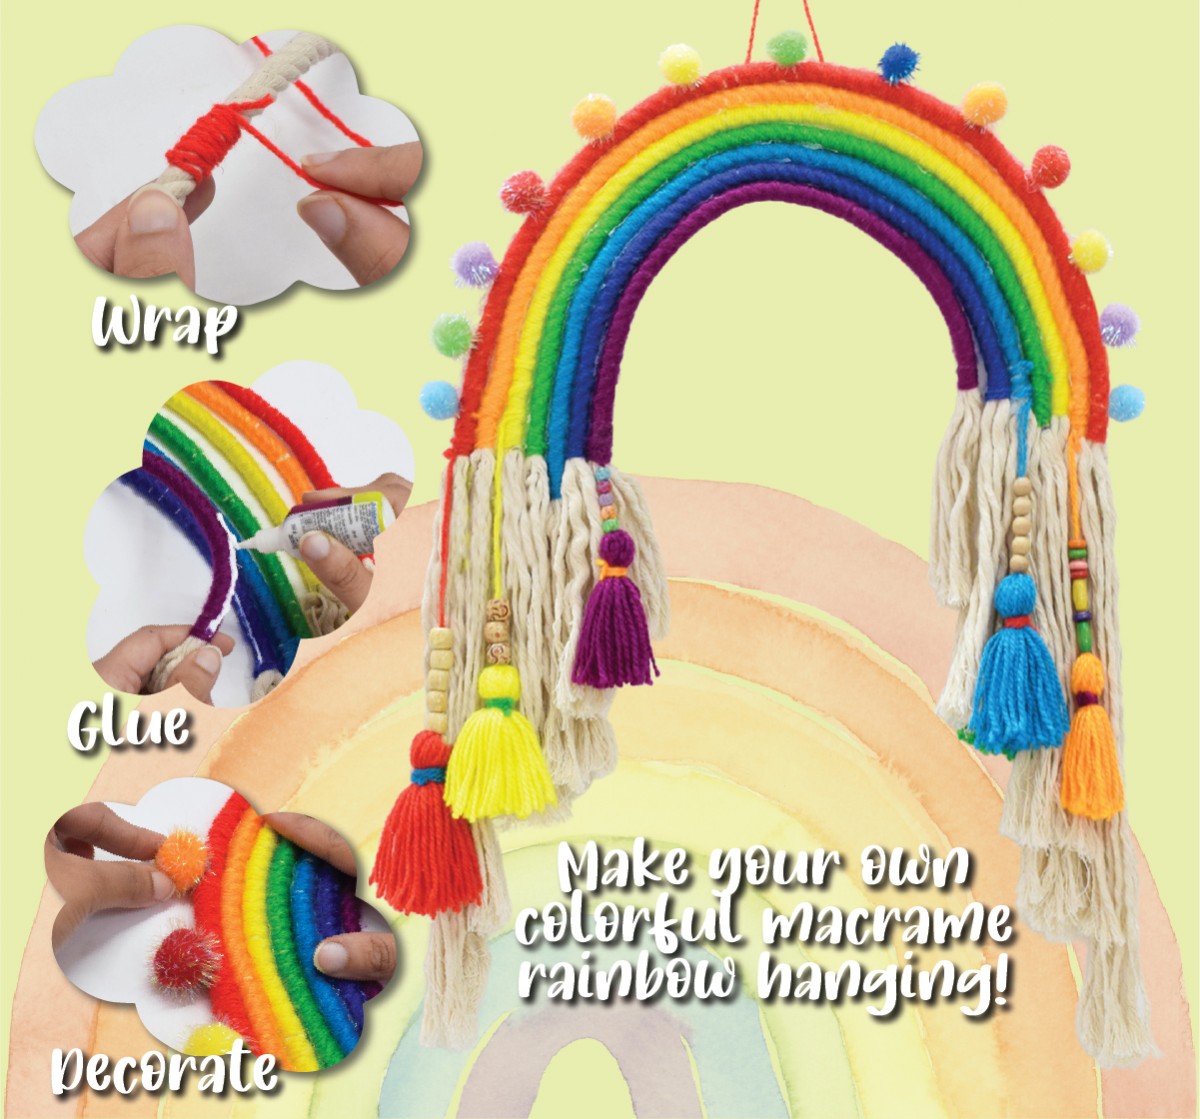 Kalakaram Make Your Own Macrame Rainbow Kit, DIY Room Decor Kit for Girls, Art & Craft Kit, Birthday Gift for Kids, Rainbow Home Decor Kit for Girls, 8Y+, Multicolour